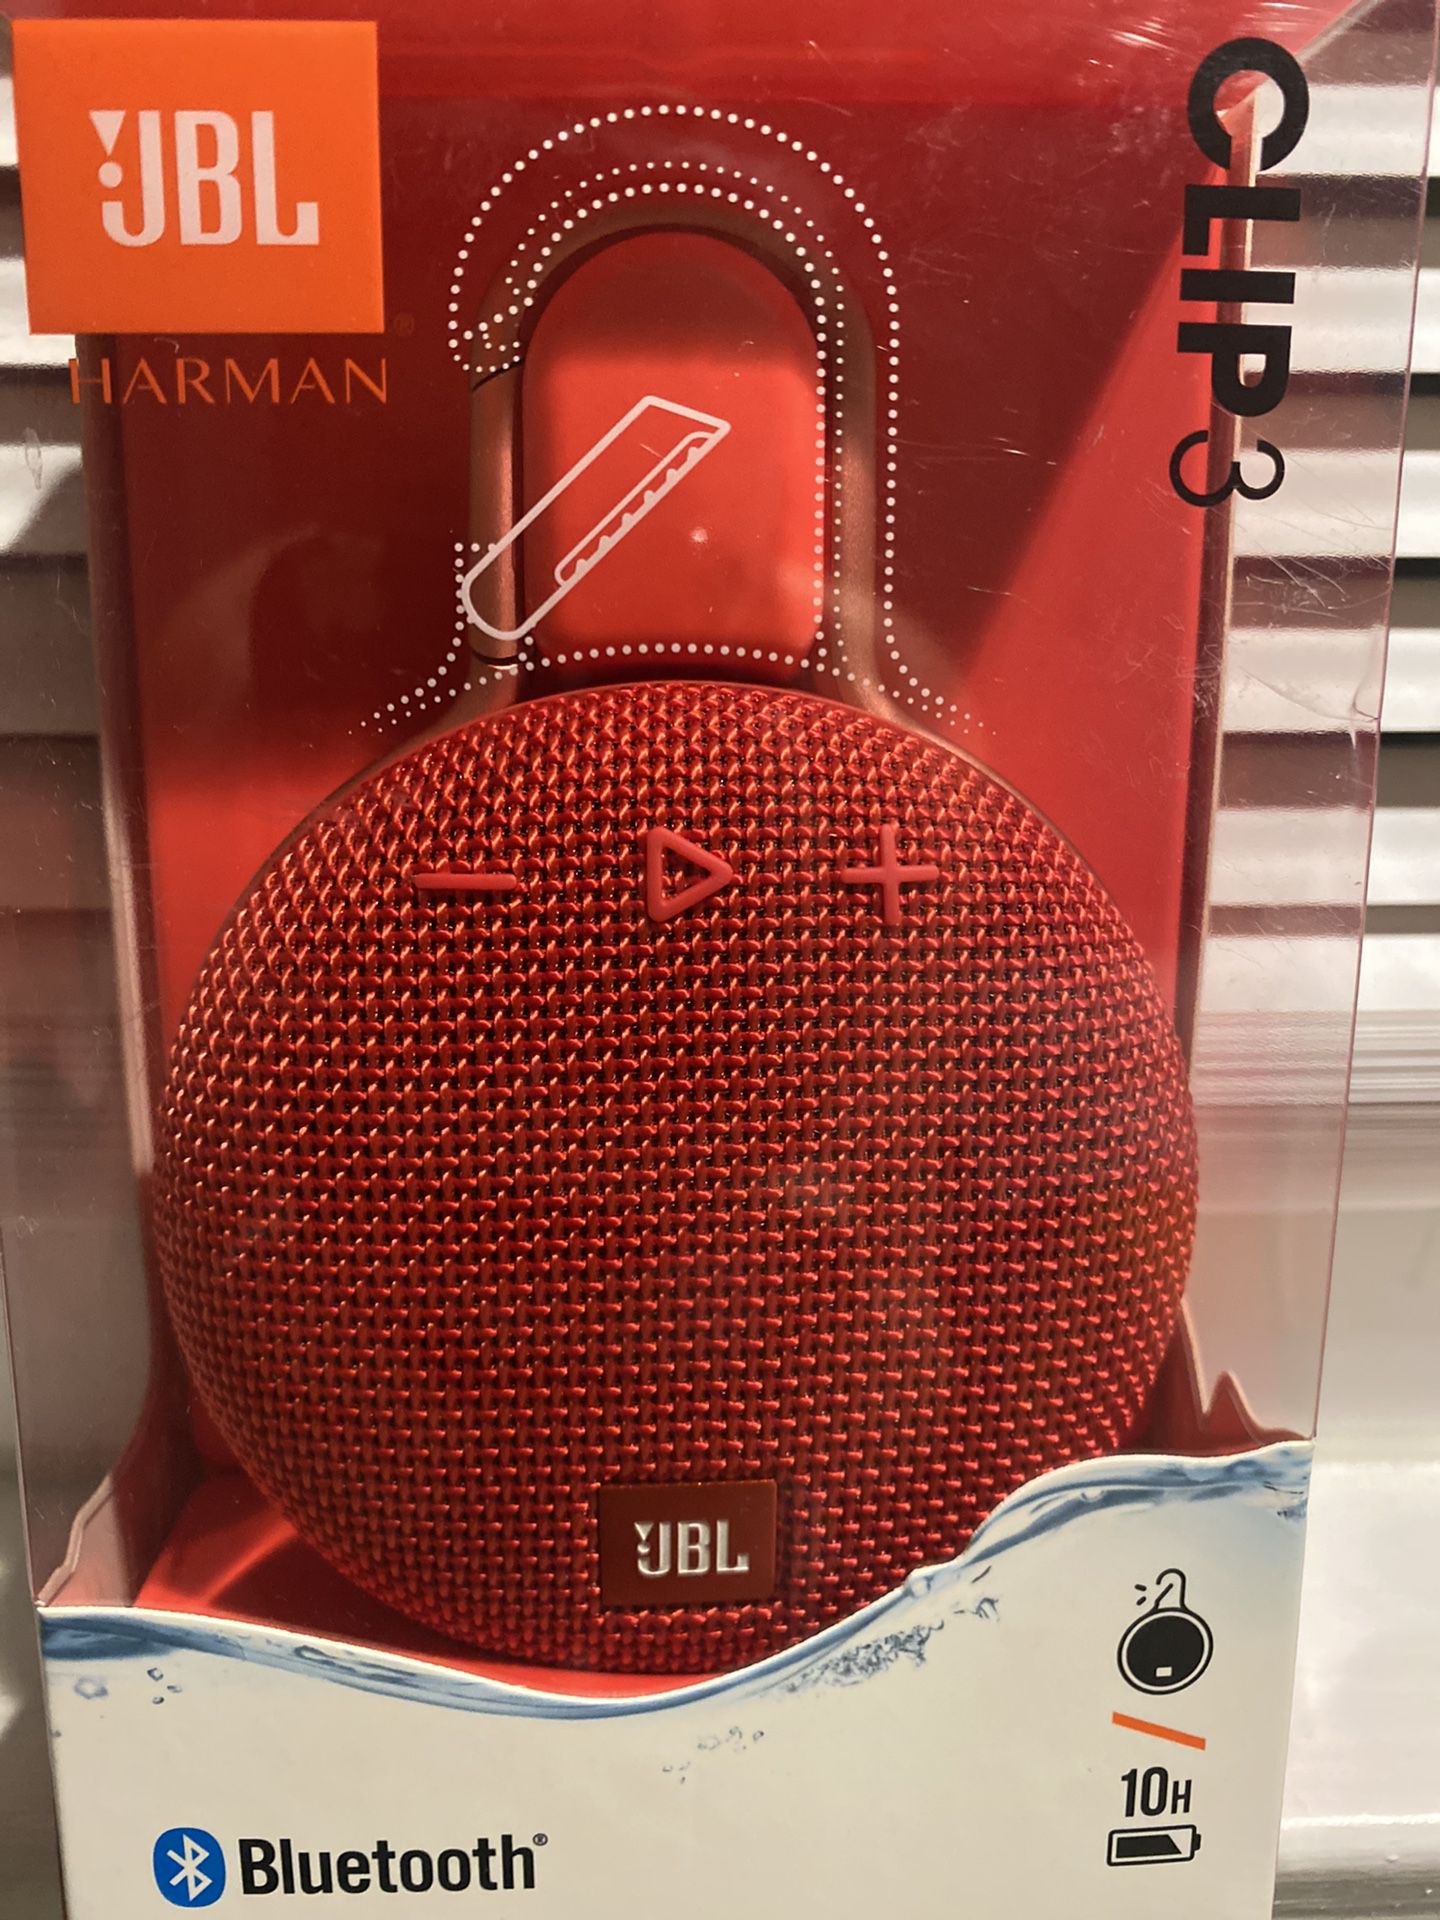 JBL Bundle package with wireless headphones